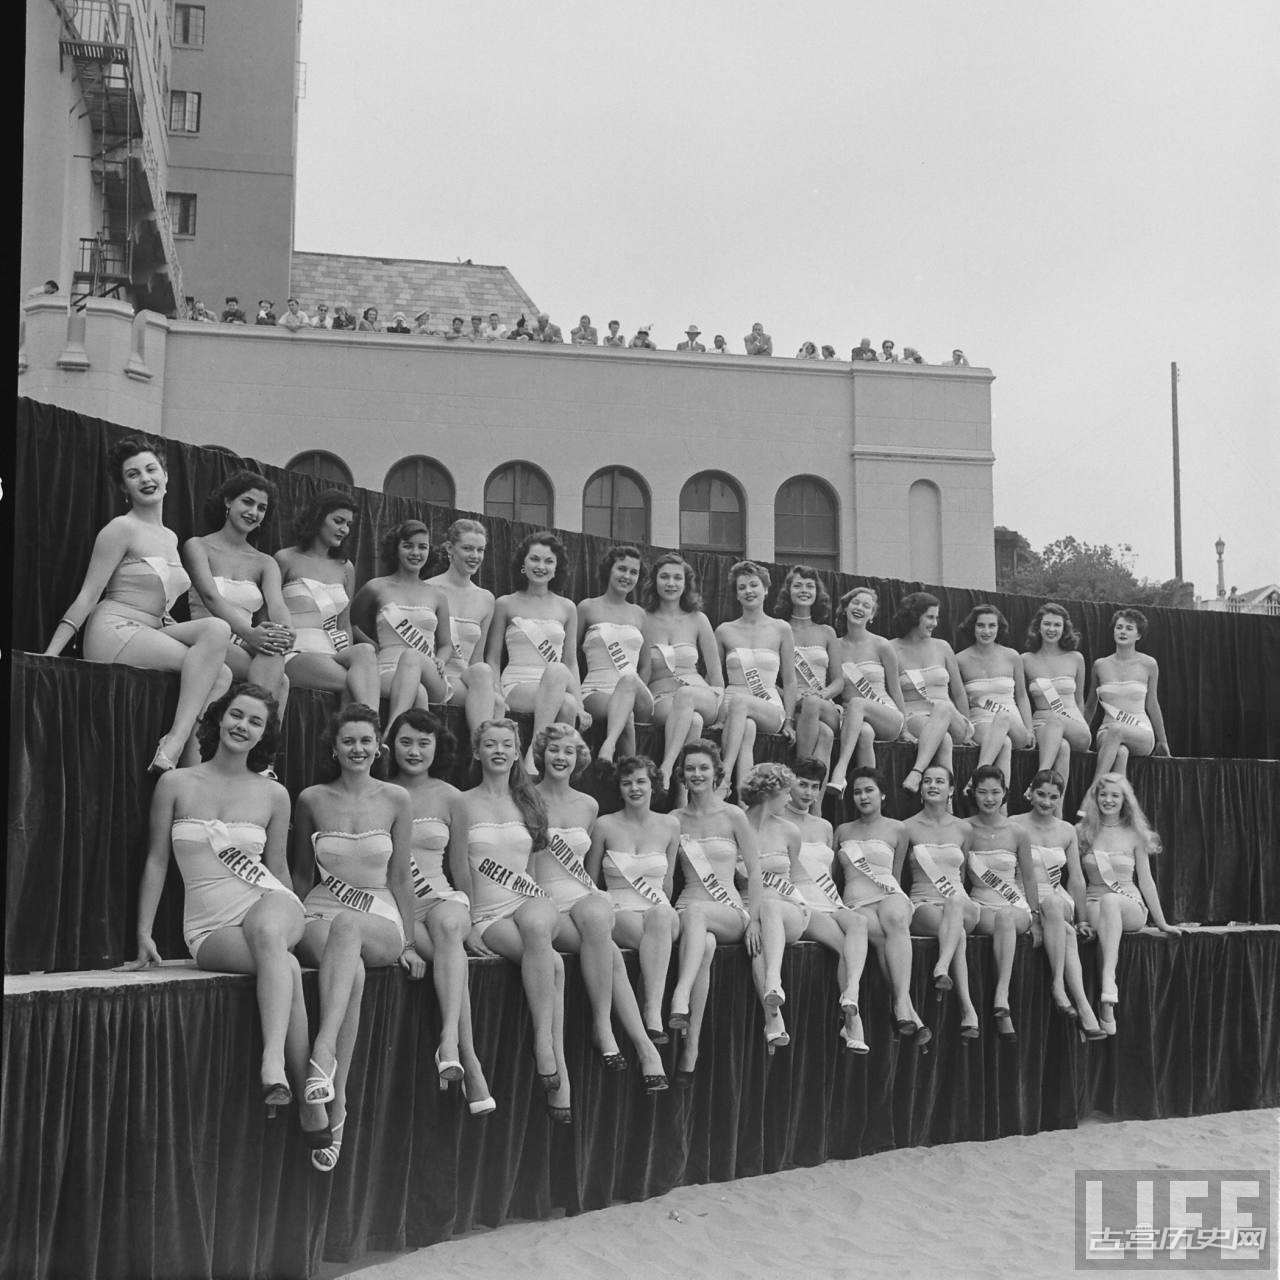 1952年首届世界环球小姐选美赛投降没几年的日本也参加了